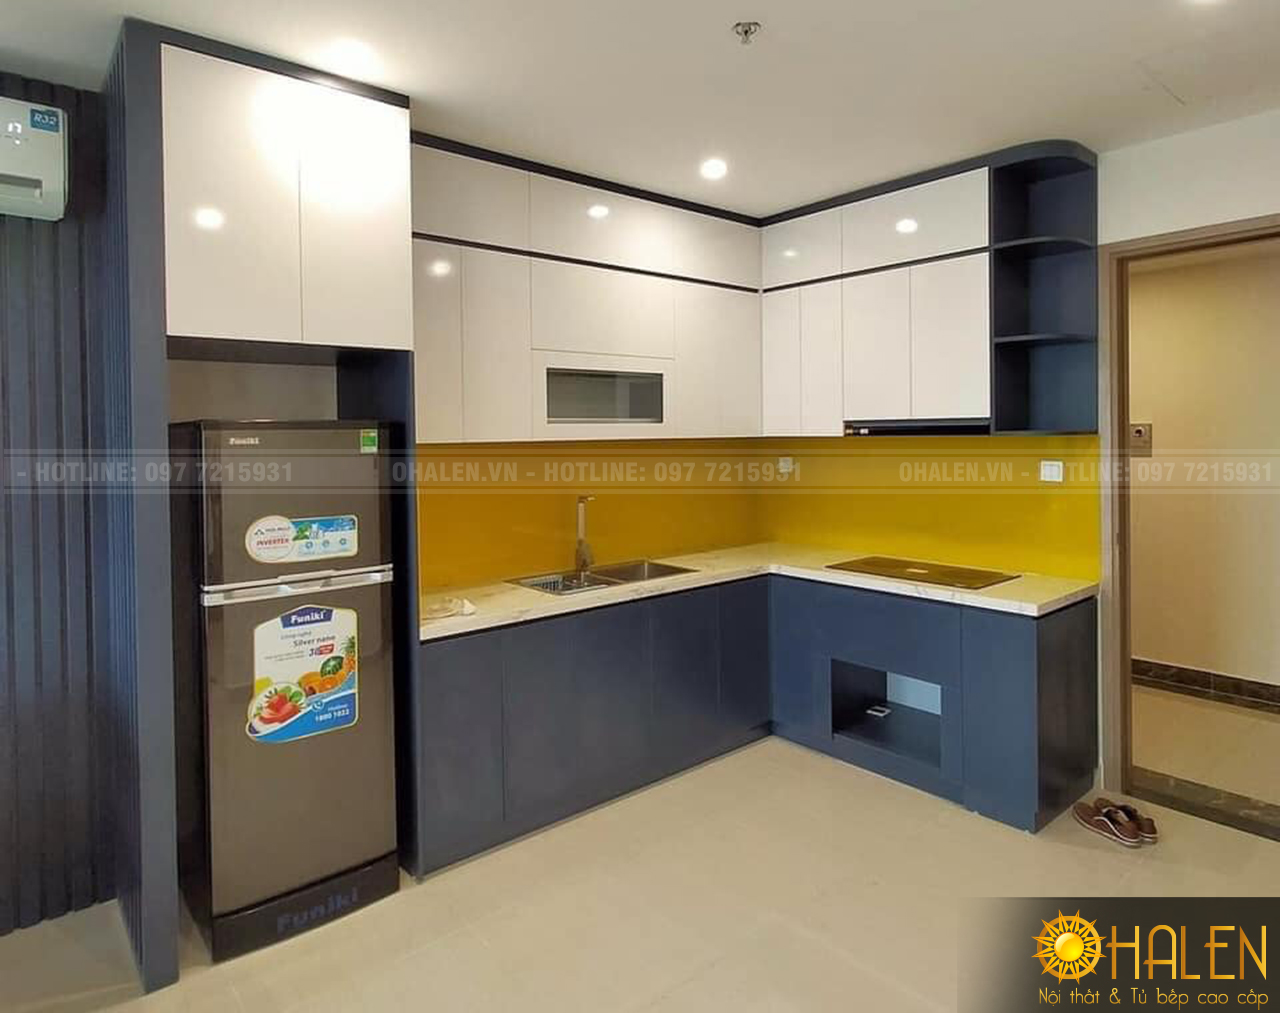 Mẫu tủ bếp sát trần chữ L chất liệu Melamine kết hợp với kính ốp bếp màu vàng hiện đại và ấm cúng